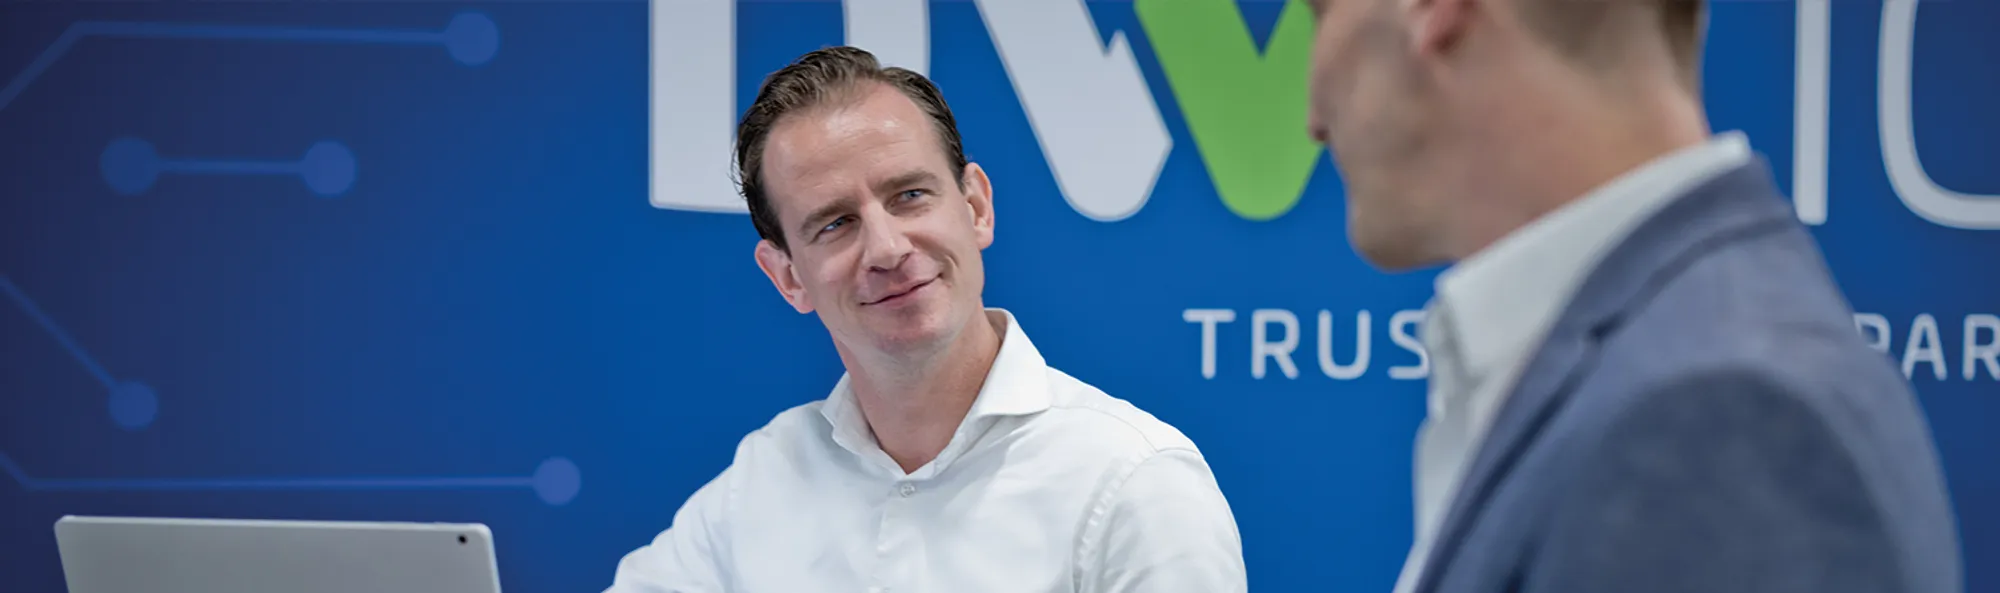 Veldwerk | Trusted ICT Partner